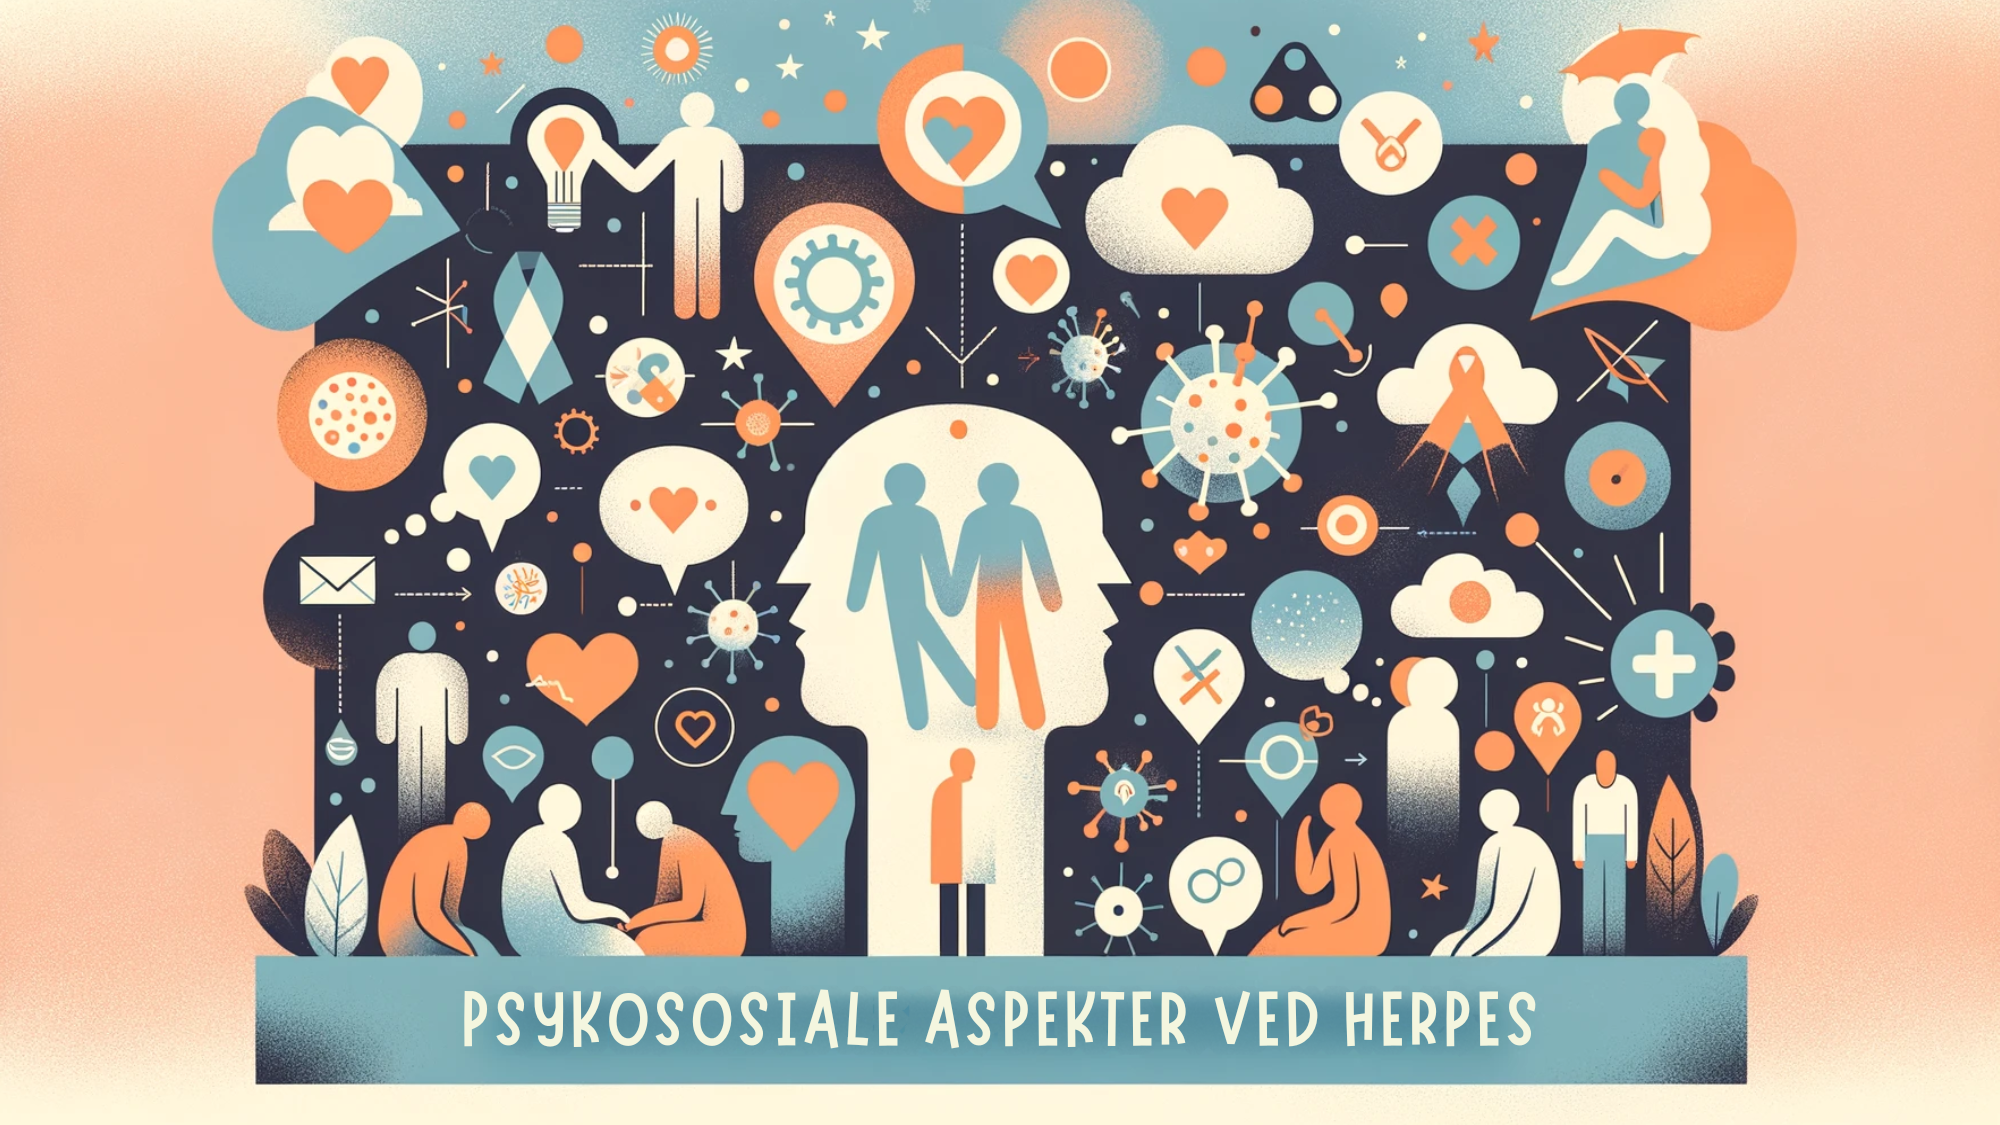 Abstrakt bilde som skildrer psykososiale aspekter ved herpes, med ikoner for støtte og stigma